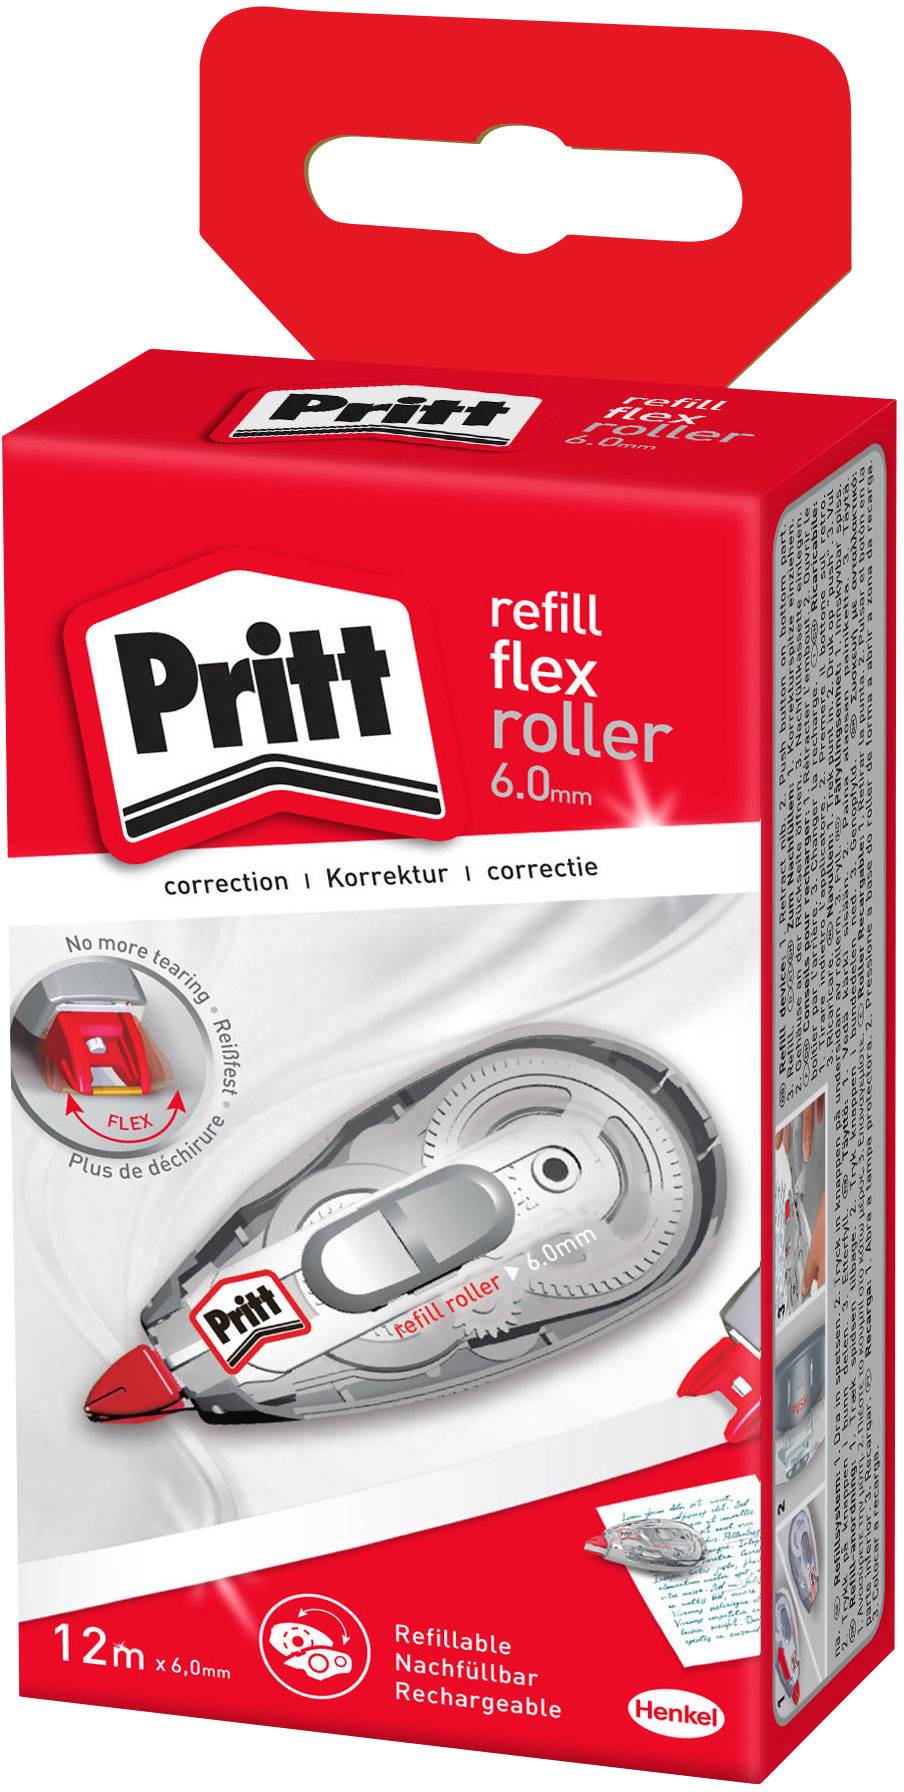 Pritt 2120455 4.2 mm Refill Cartridge for Correction Roller